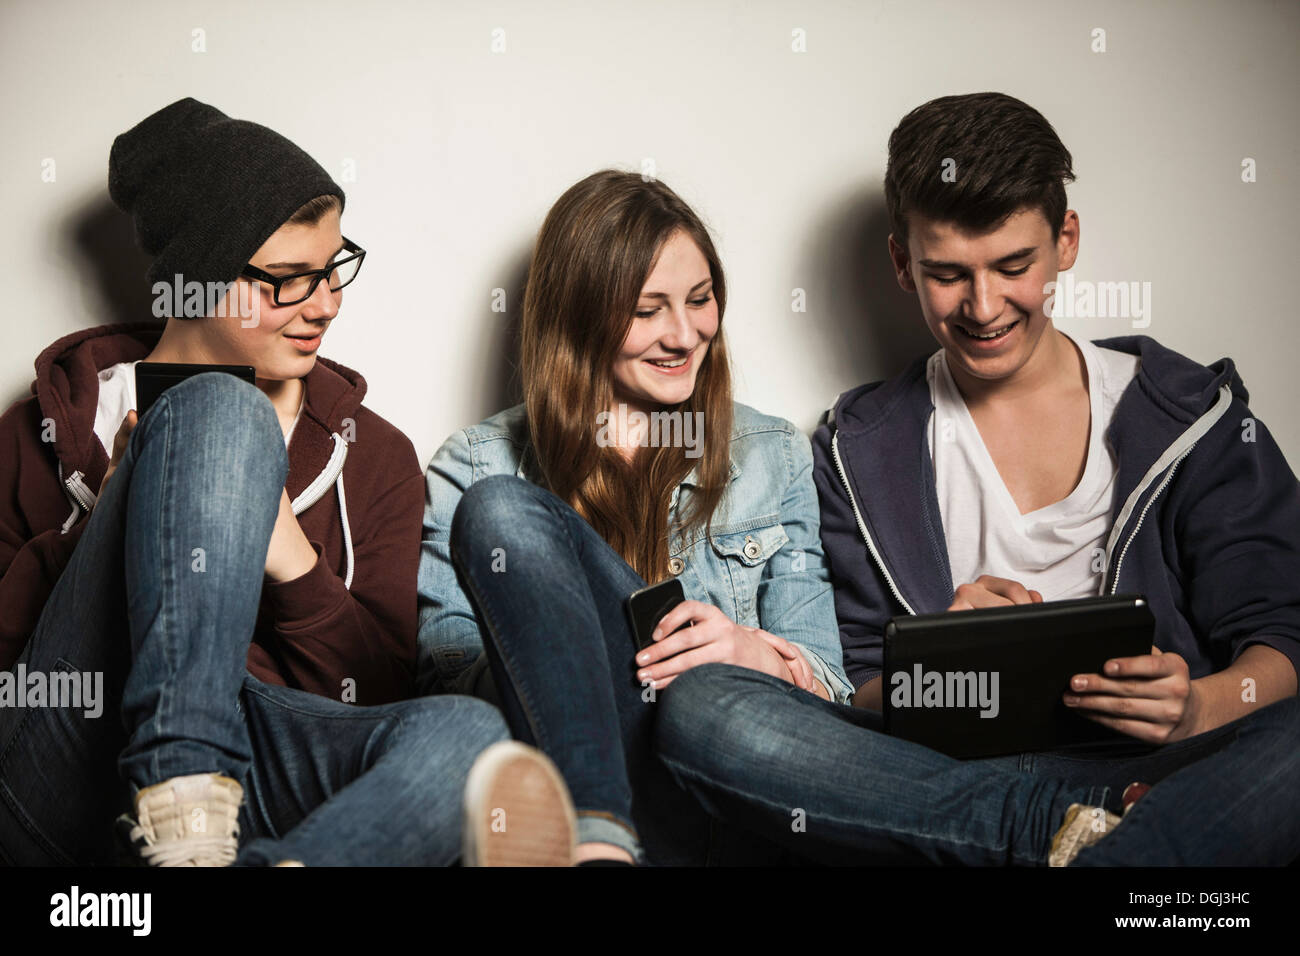 Los adolescentes mediante tableta digital Foto de stock